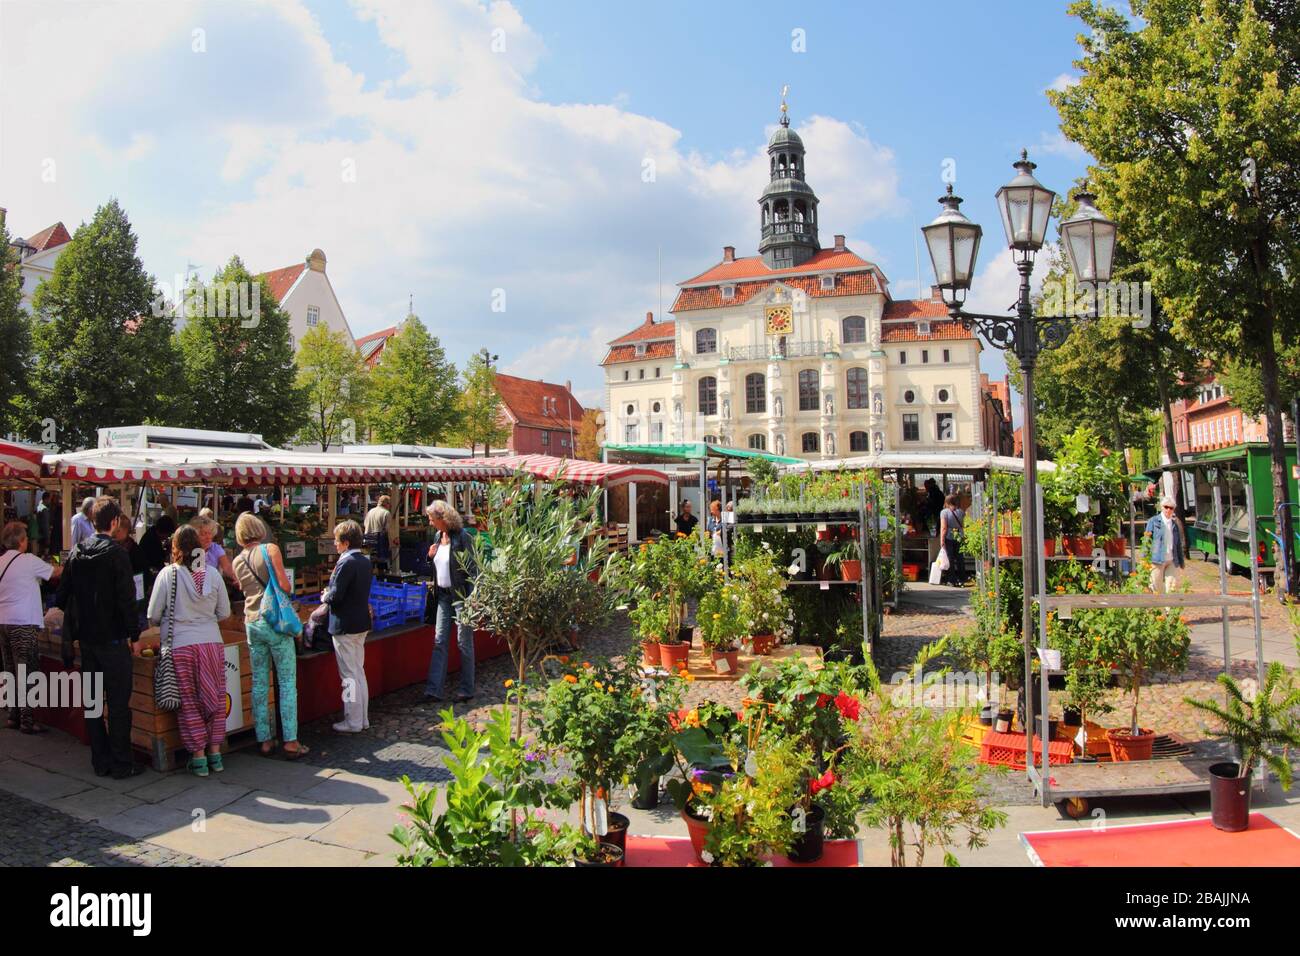 Lüneburgisch, Deutschland - 21. August 2013: Markt neben dem Rathaus in Lübeck, Marktplatz. Wochenmarkt für frische und hochwertige Produkte. Im Vordergrund Stockfoto